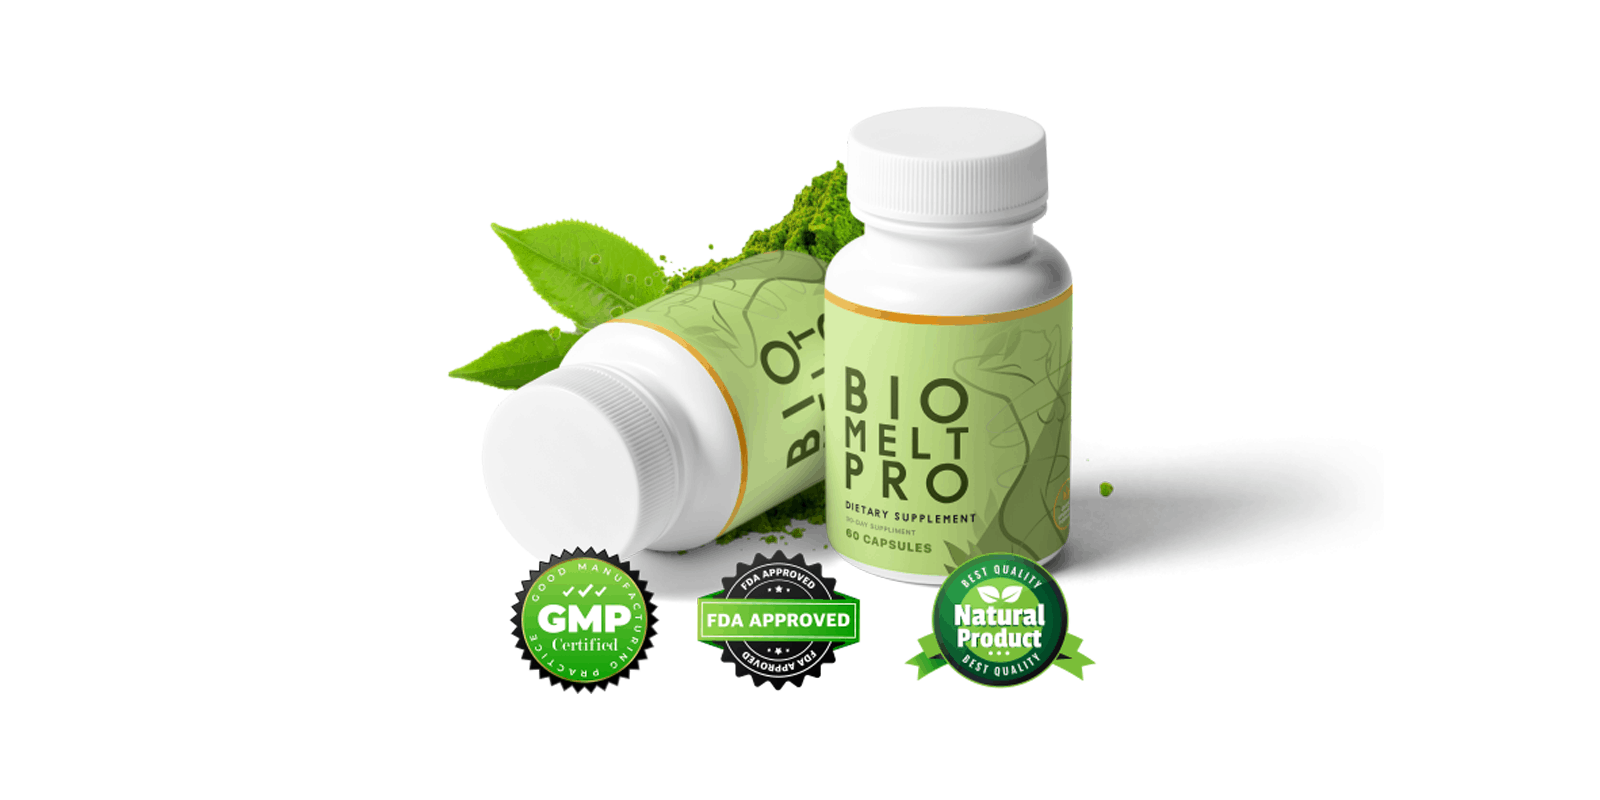 Bio-melt-pro-supplement-review